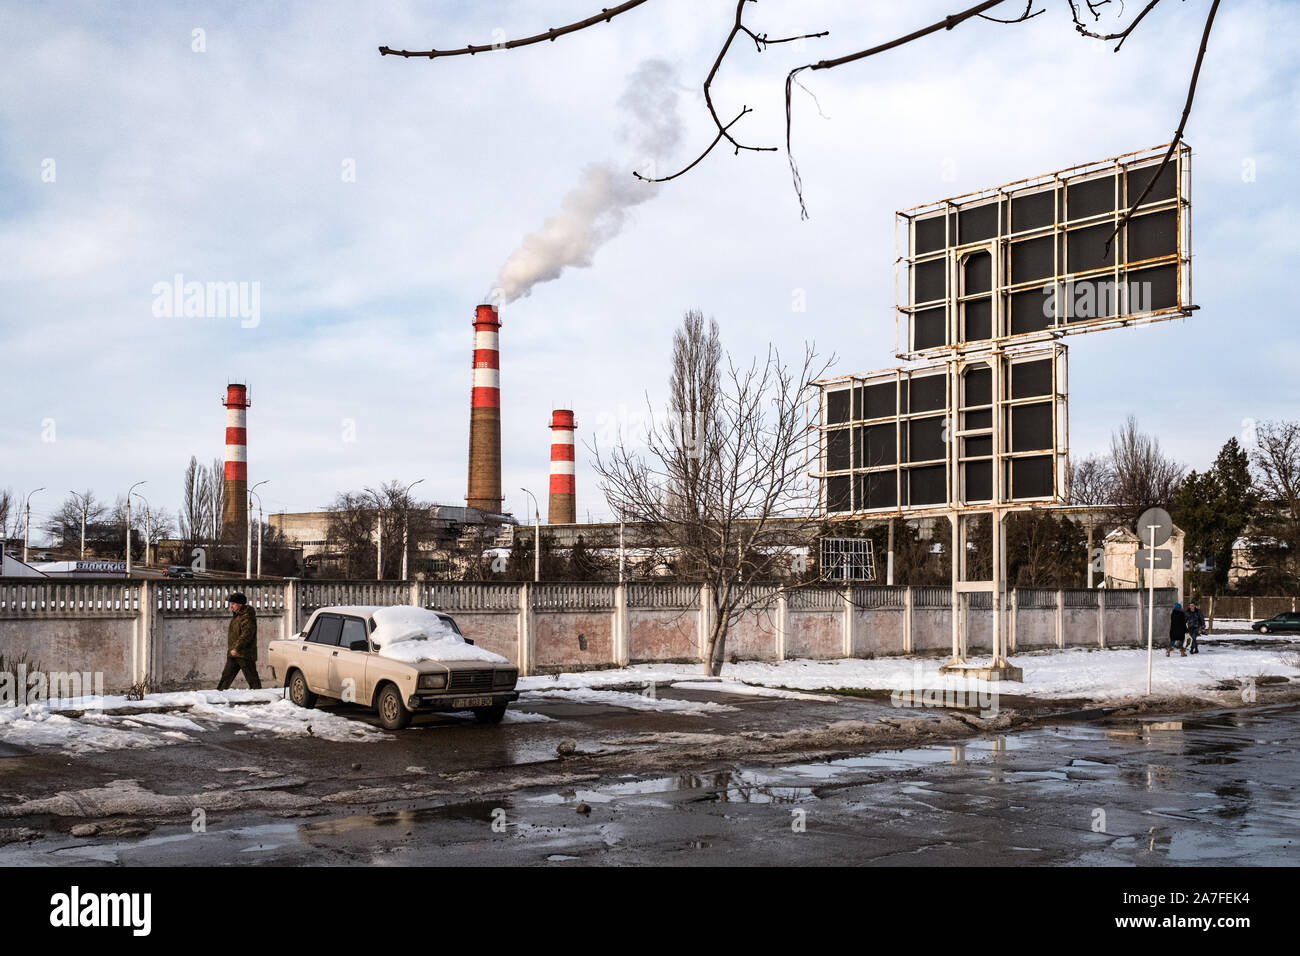 Winter in der Hauptstadt Tiraspol Transnistrien oder Transnistrien. In der  Ferne ein wasser heizung Schornstein Gebrüll Rauch gesehen werden kann  Stockfotografie - Alamy